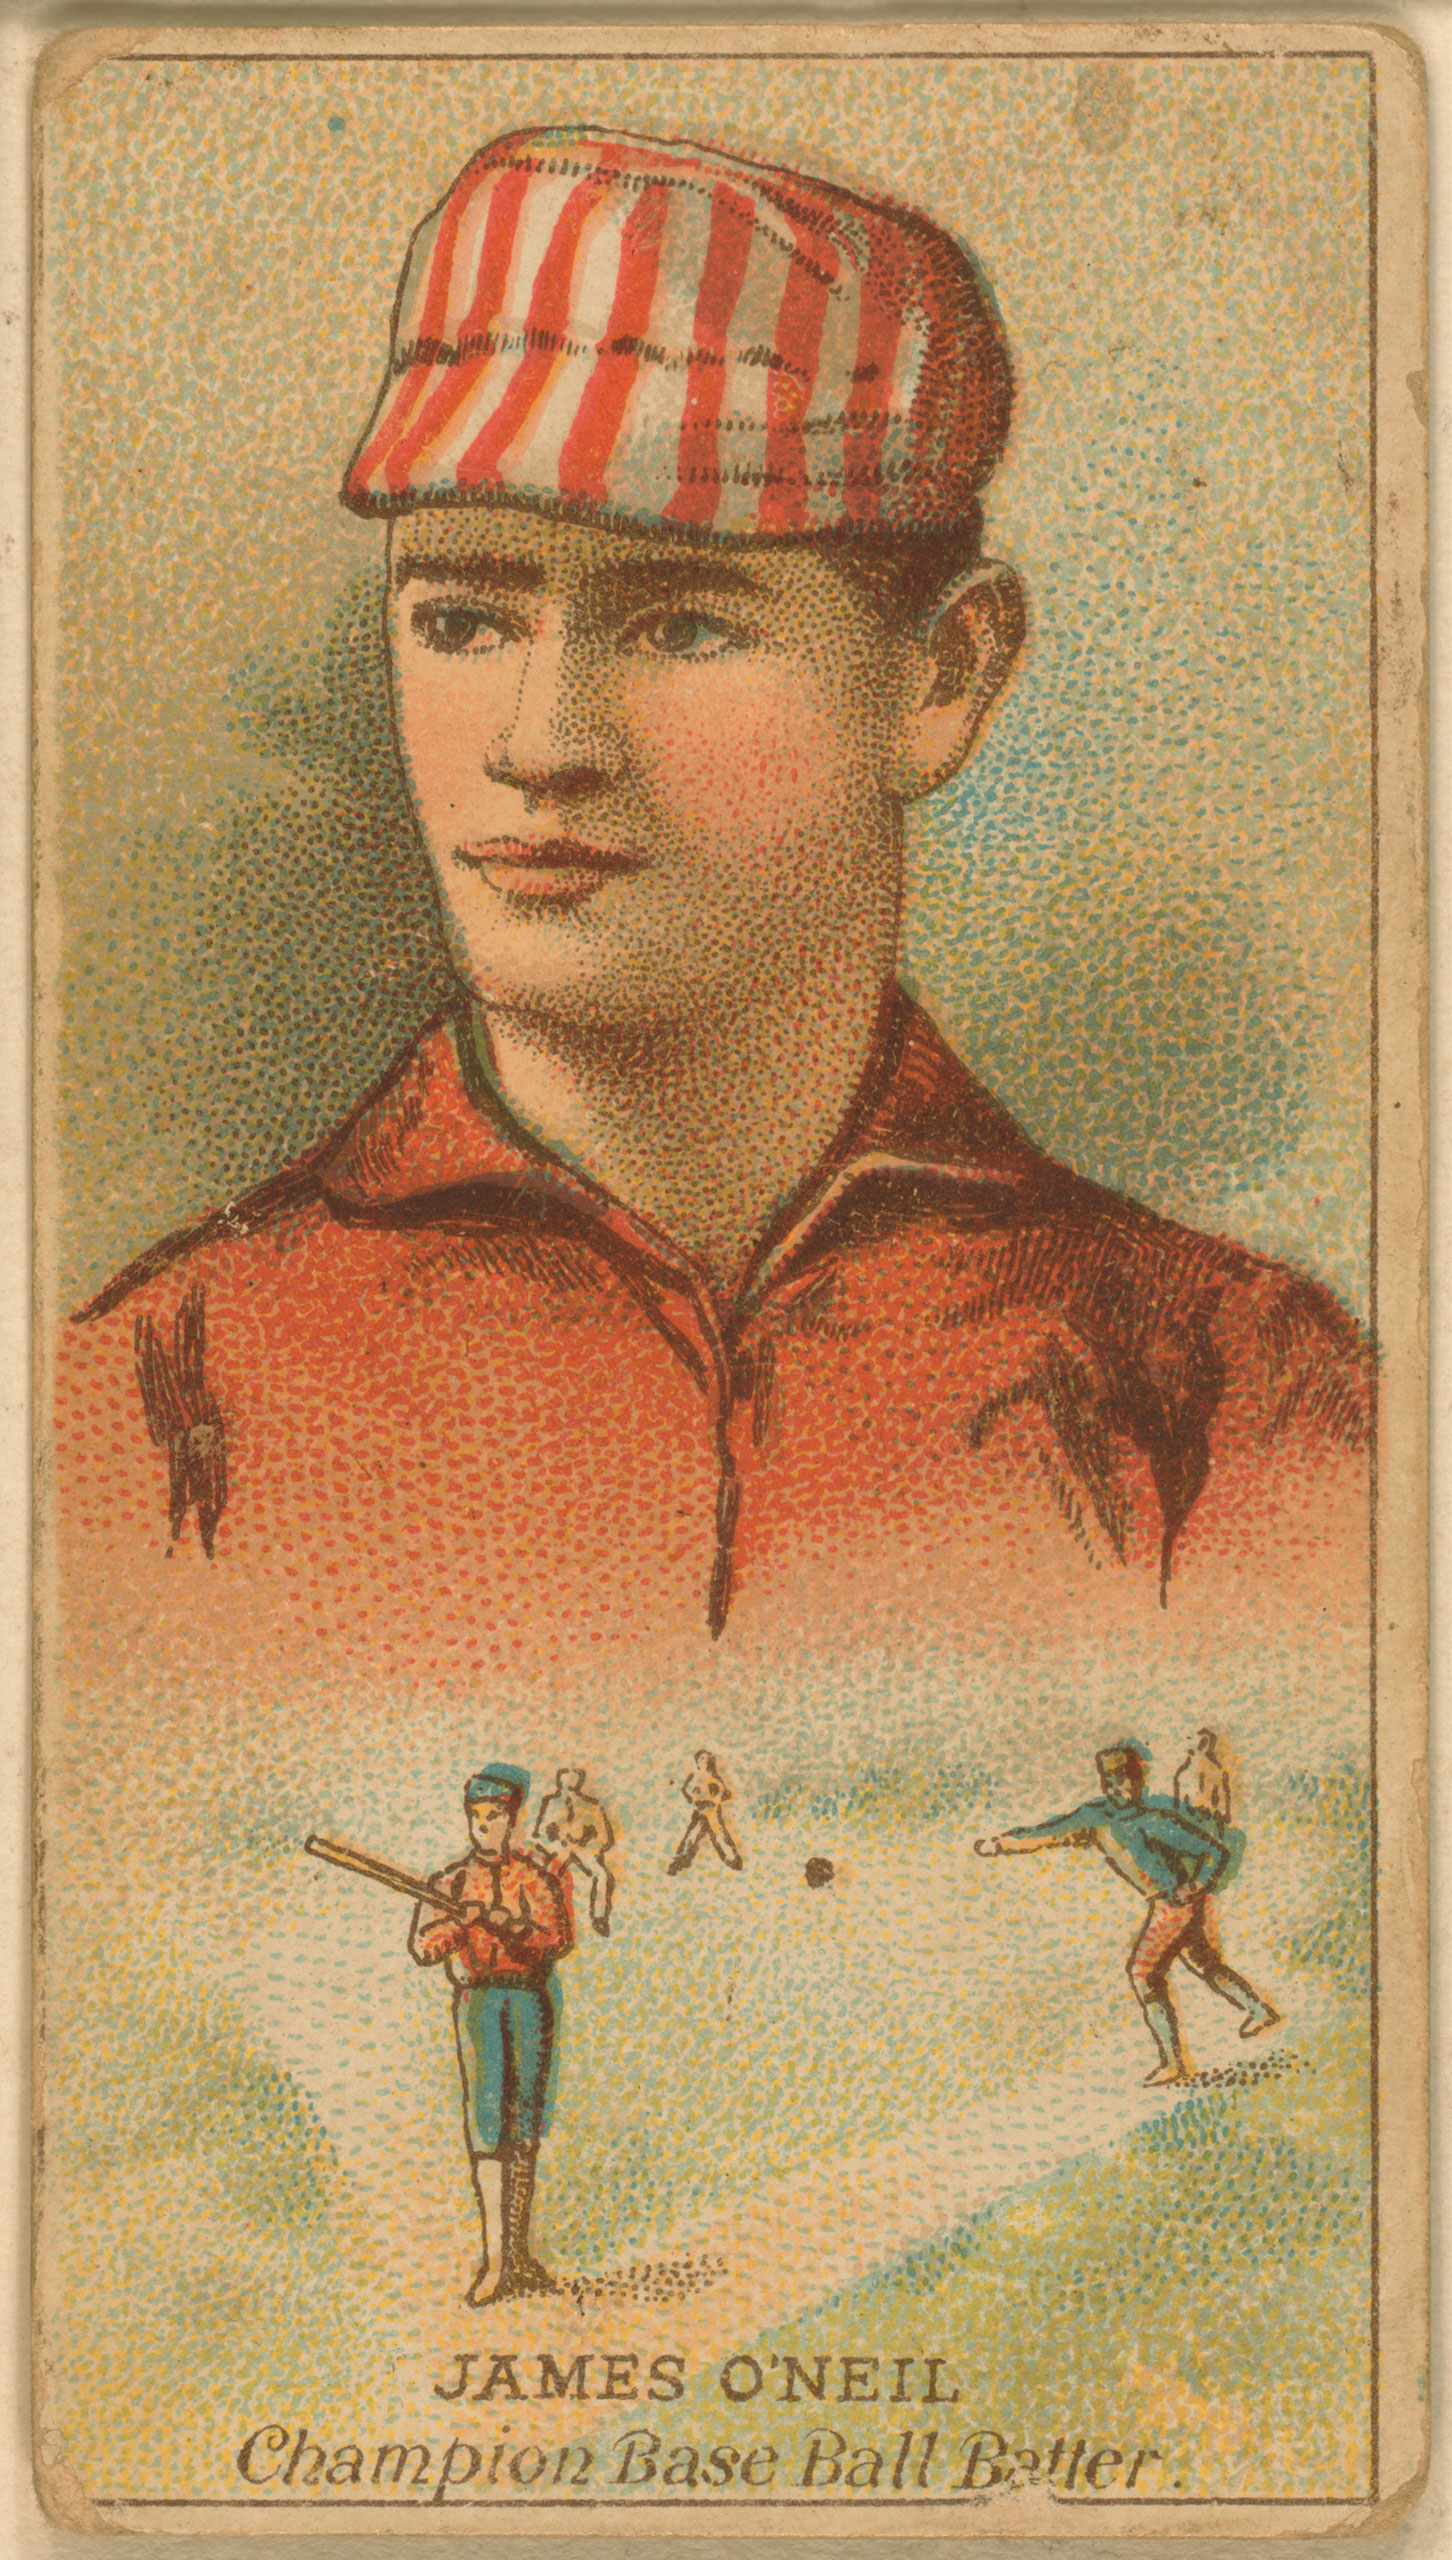 Tip O'Neill, St. Louis Browns, baseball card, 1888.